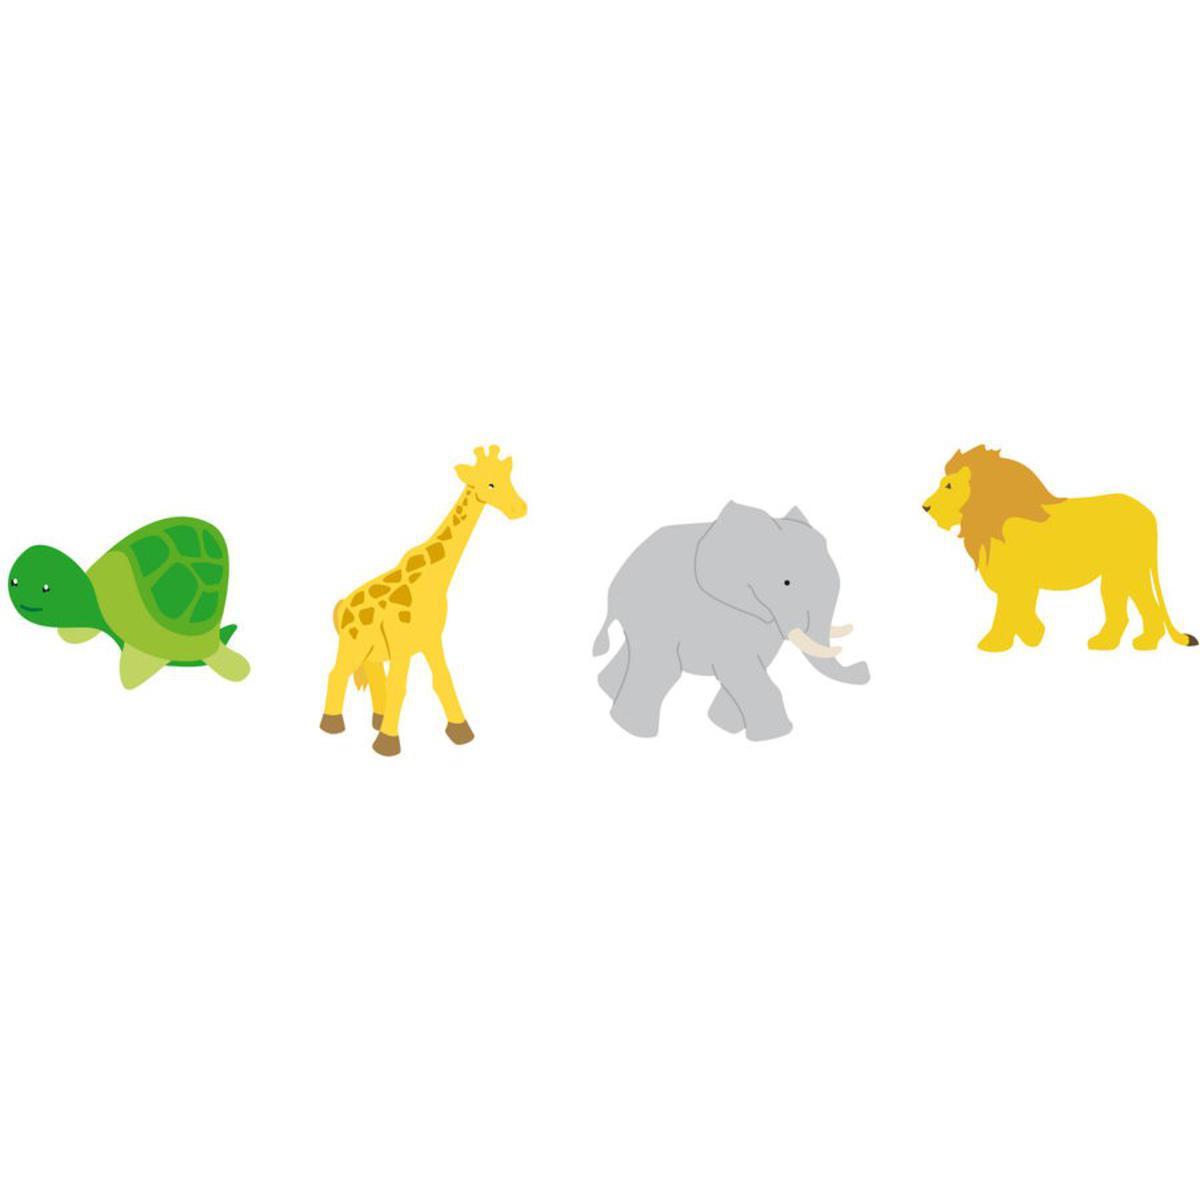 Lot de 8 embellissements Animaux d'Afrique - Bois - 8 x 0,5 x 12 cm - Multicolore